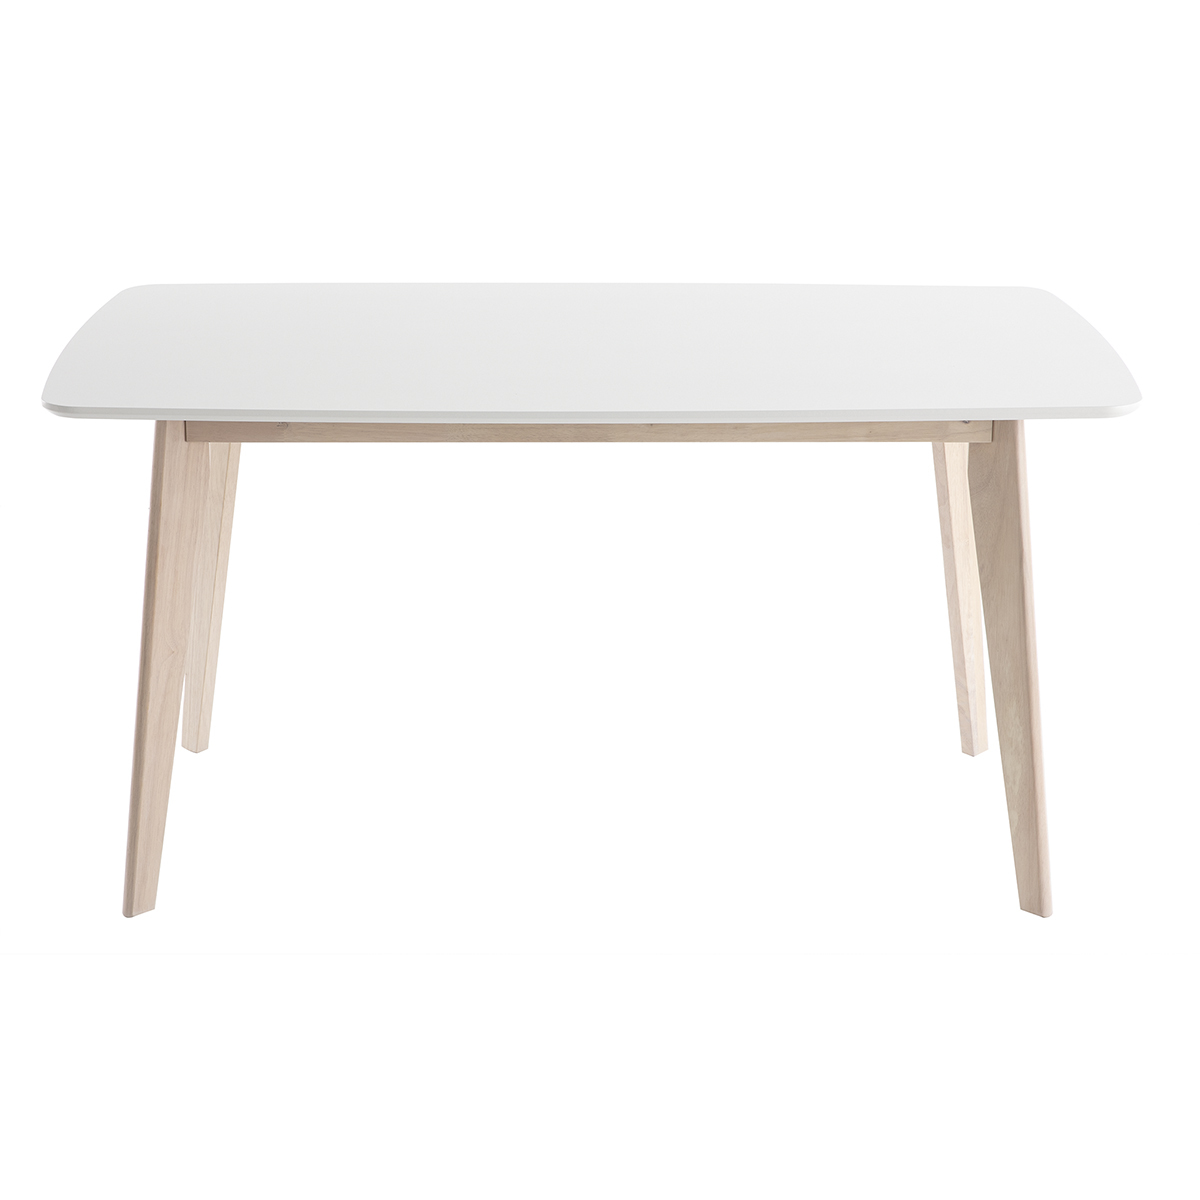 Table à manger scandinave blanc et bois clair rectangulaire L150 cm LEENA vue1